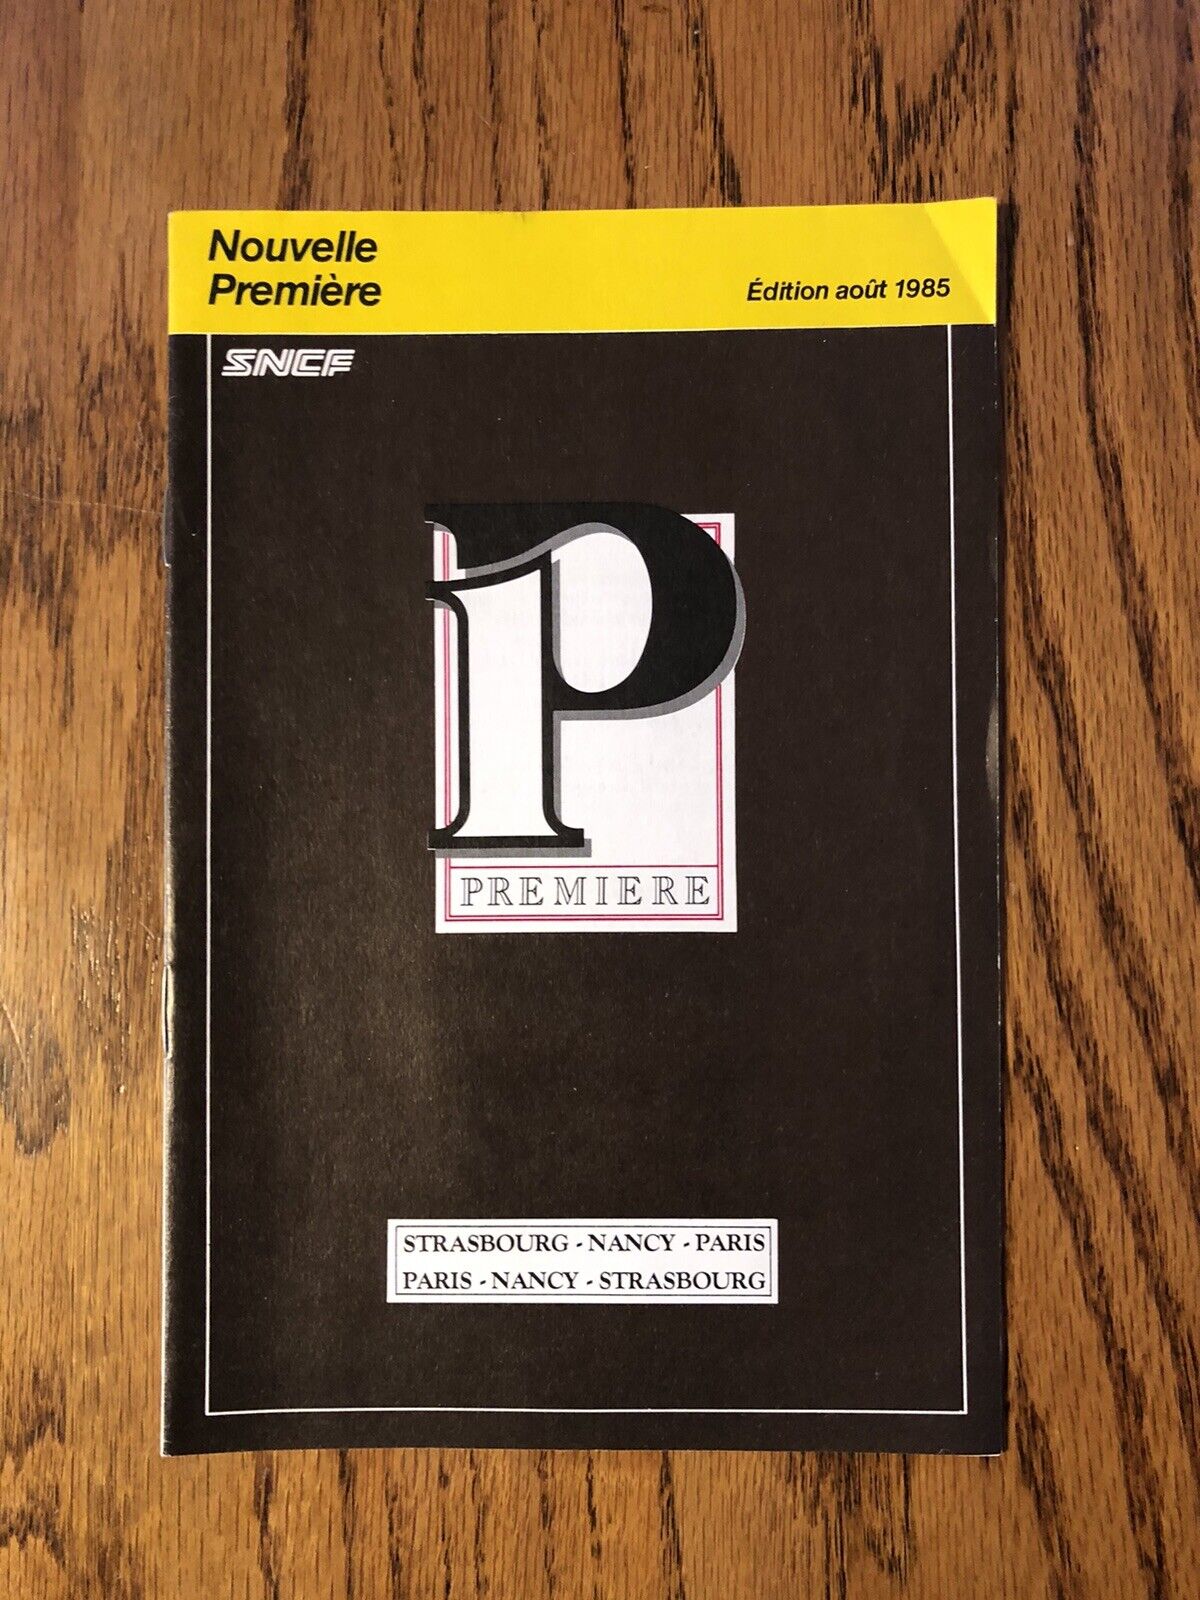 Nouvelle Premier 1985 Paris France Brochure